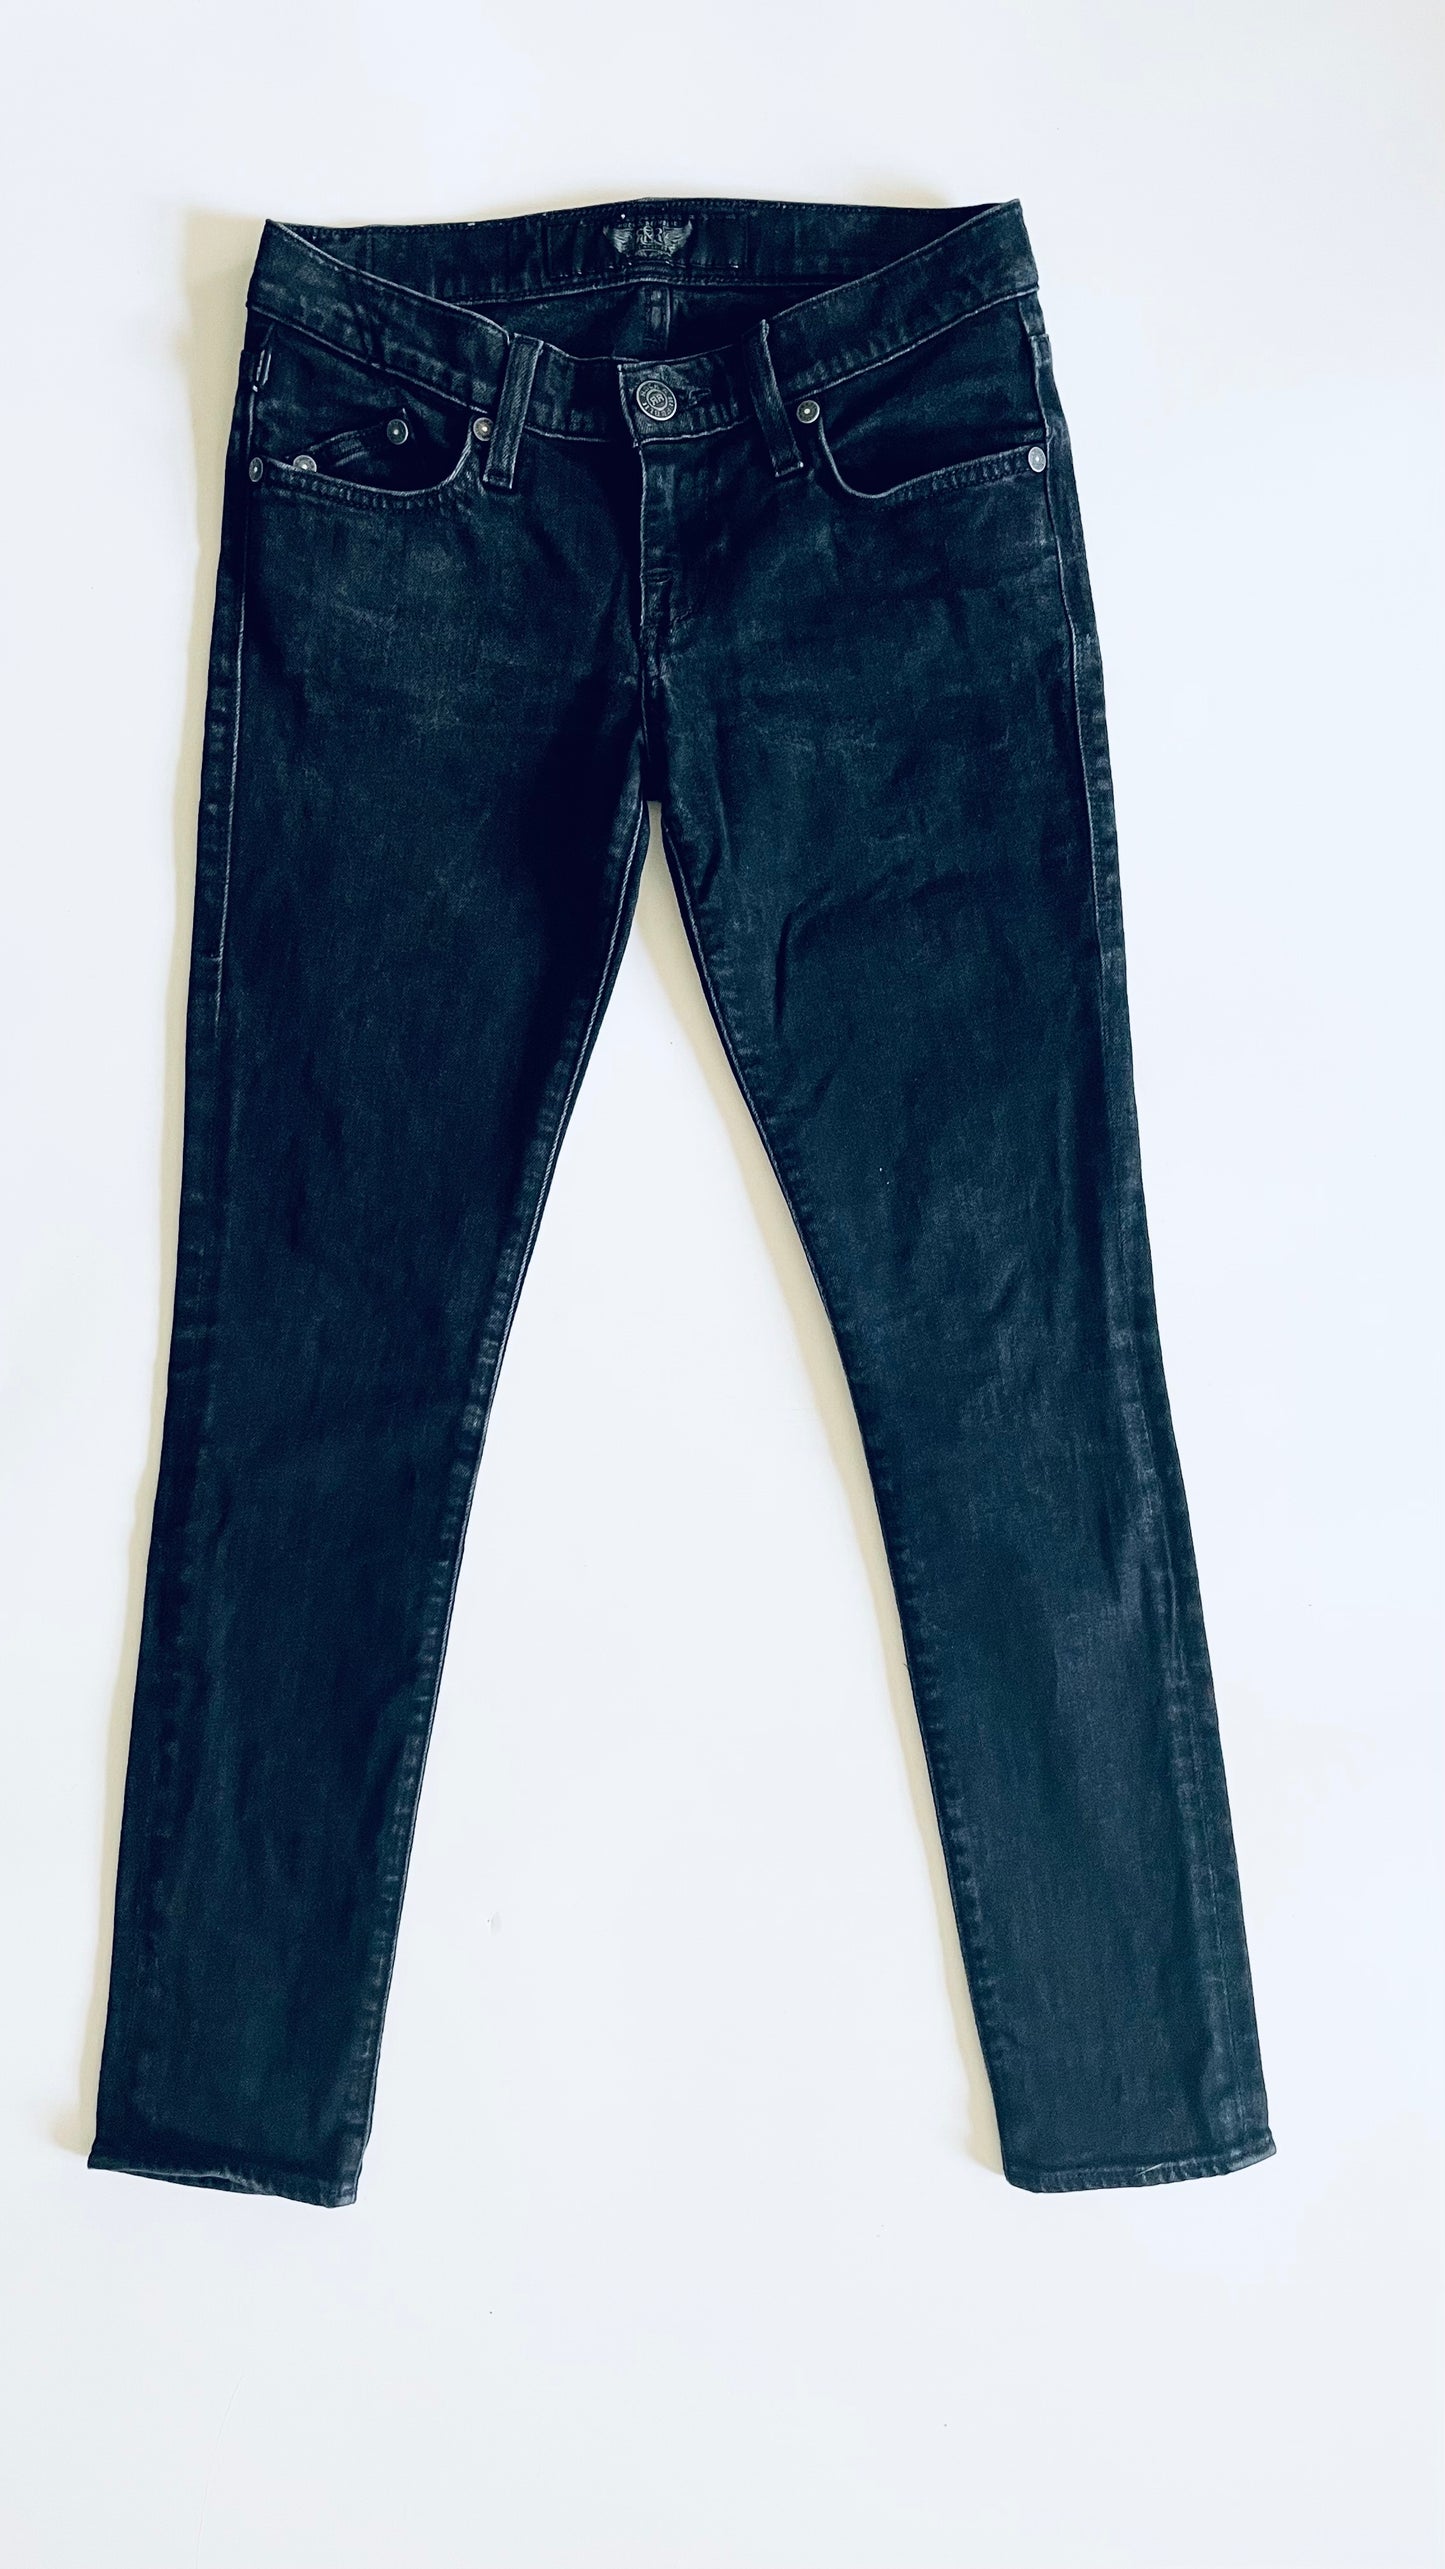 Pre-Loved Rock & Republic black skinny jeans - Size 25 x 29